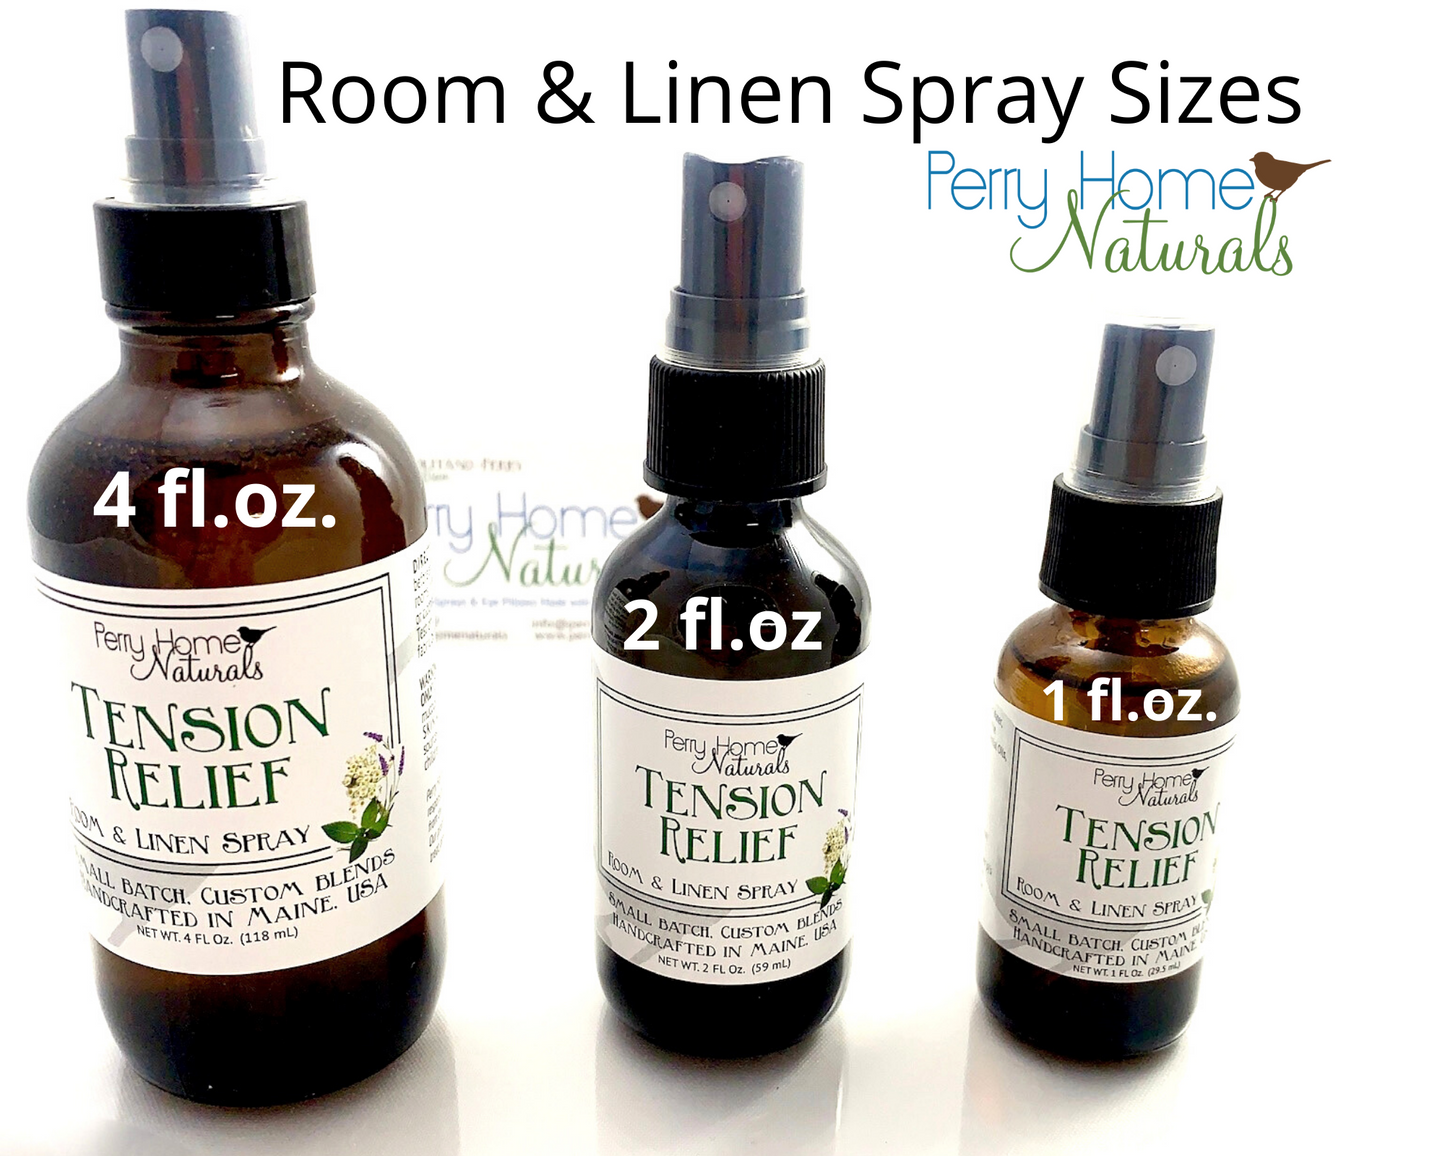 Seaside Dreams Room and Linen Spray - Lemongrass Coconut Vanilla Blend